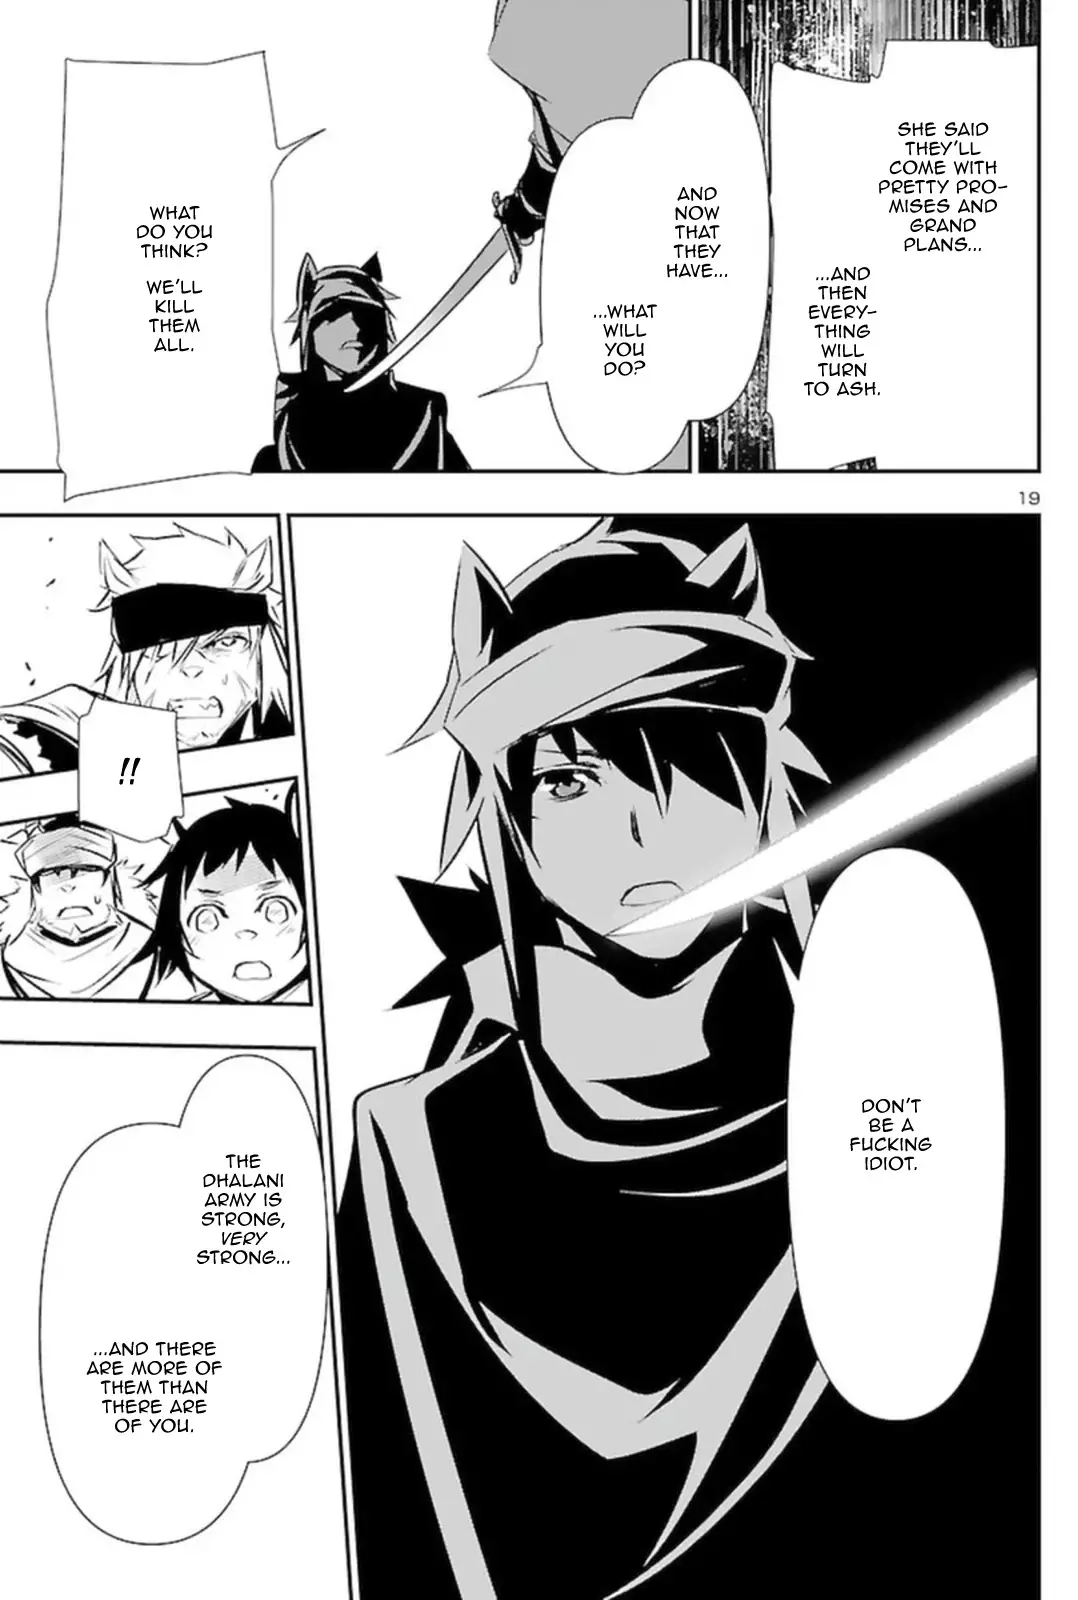 Shinju no Nectar - 57 page 19